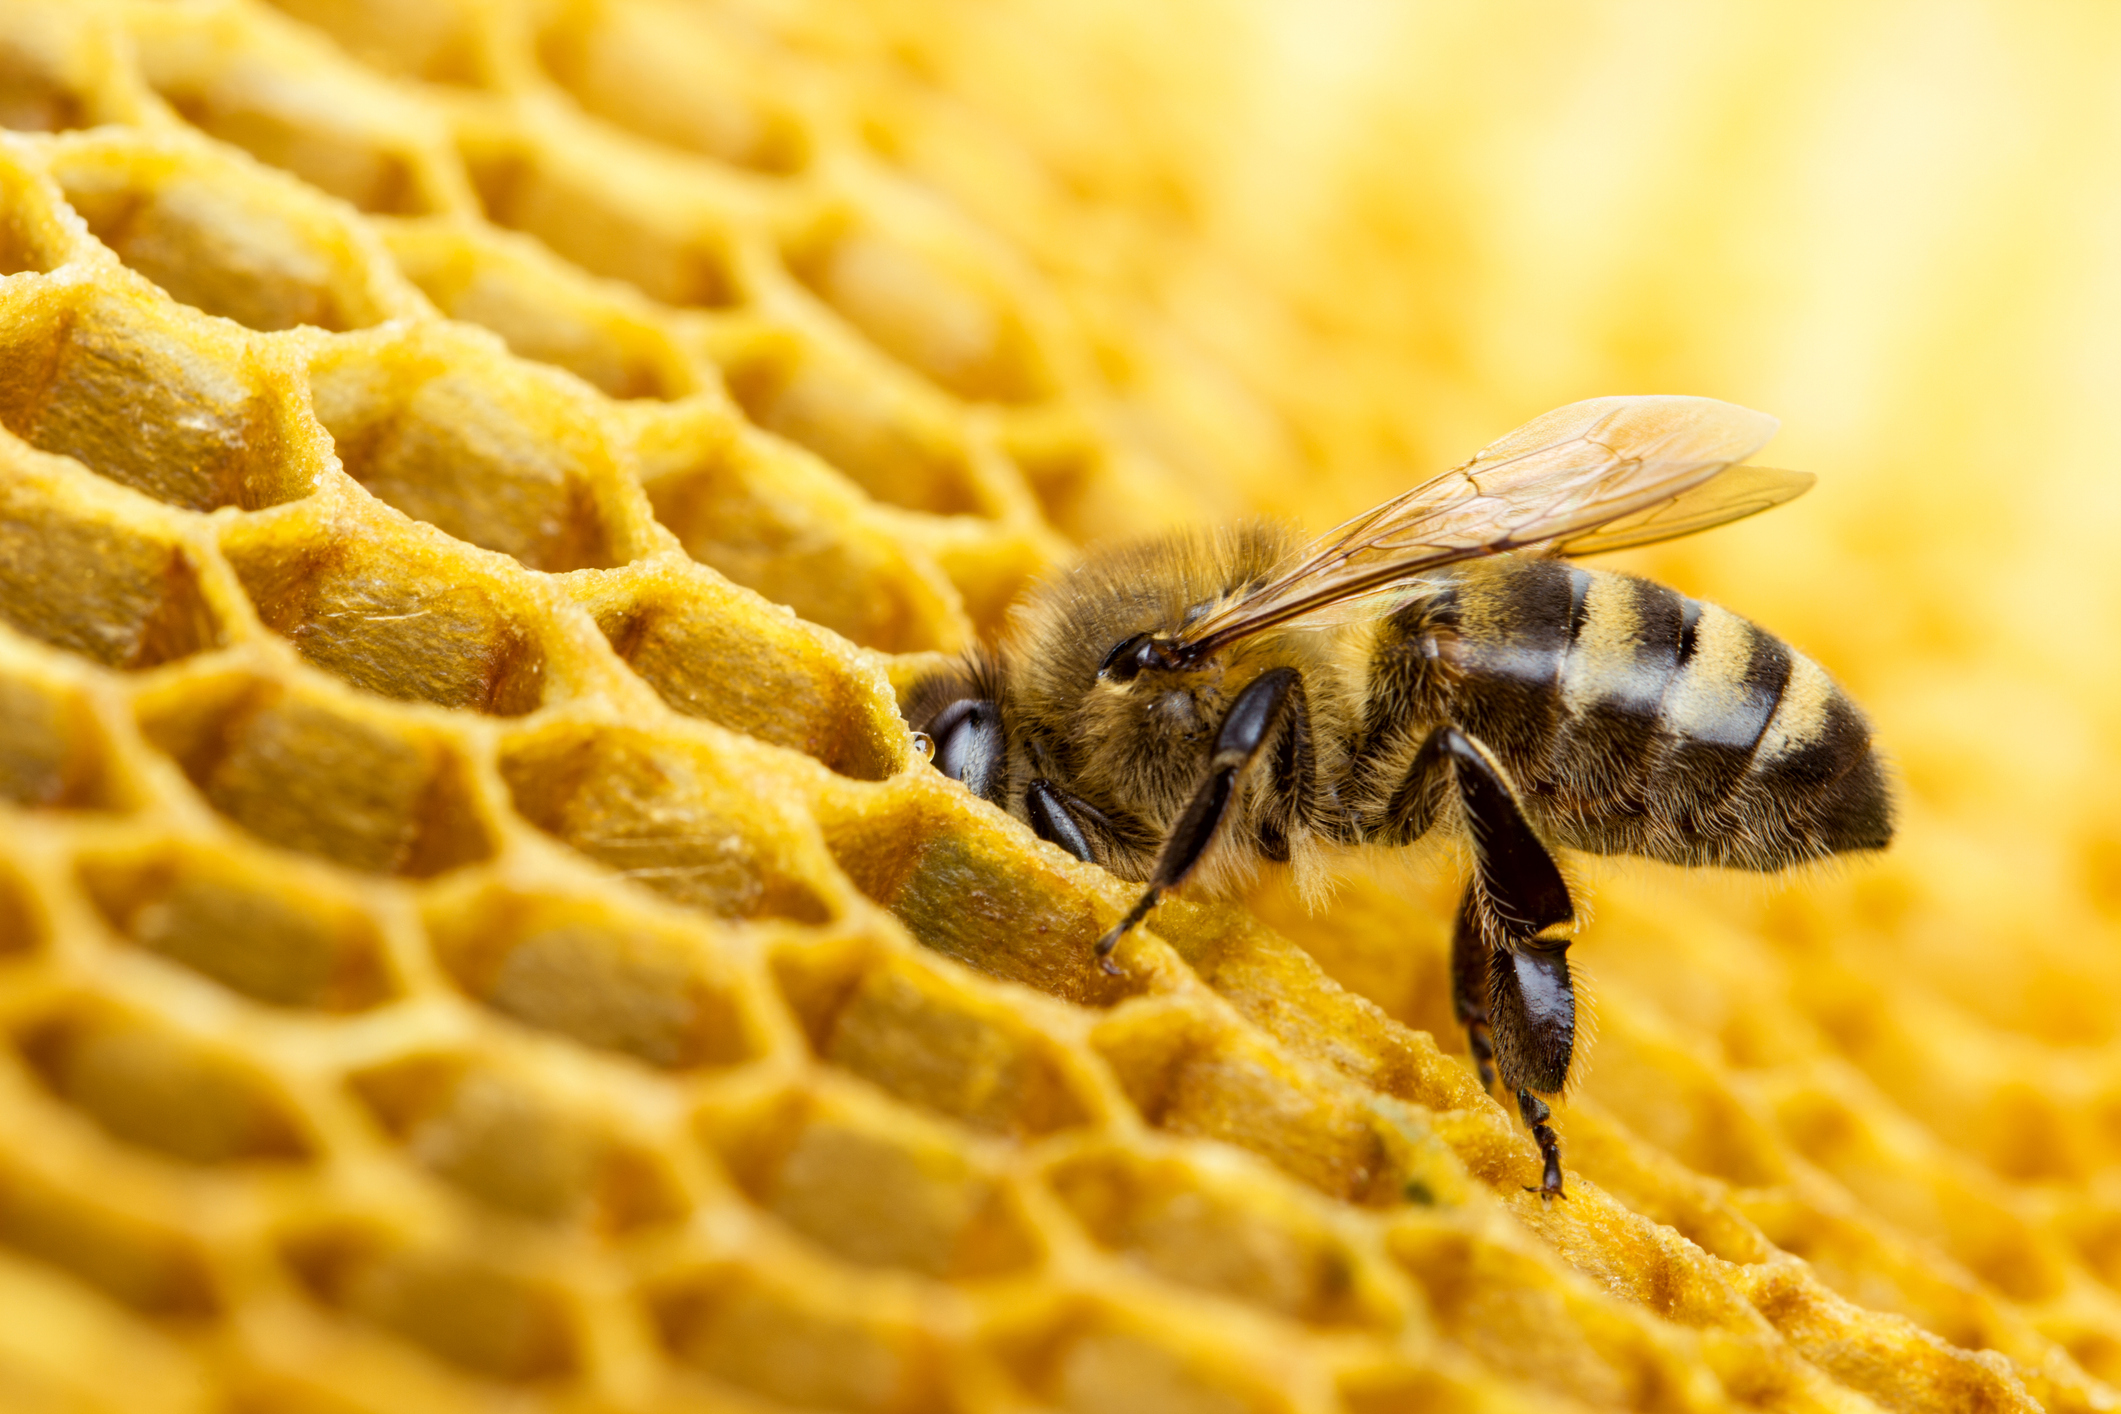 Les abeilles produisent un trop-plein de miel dans la ruche qui est récupéré par les apiculteurs et apicultrices.